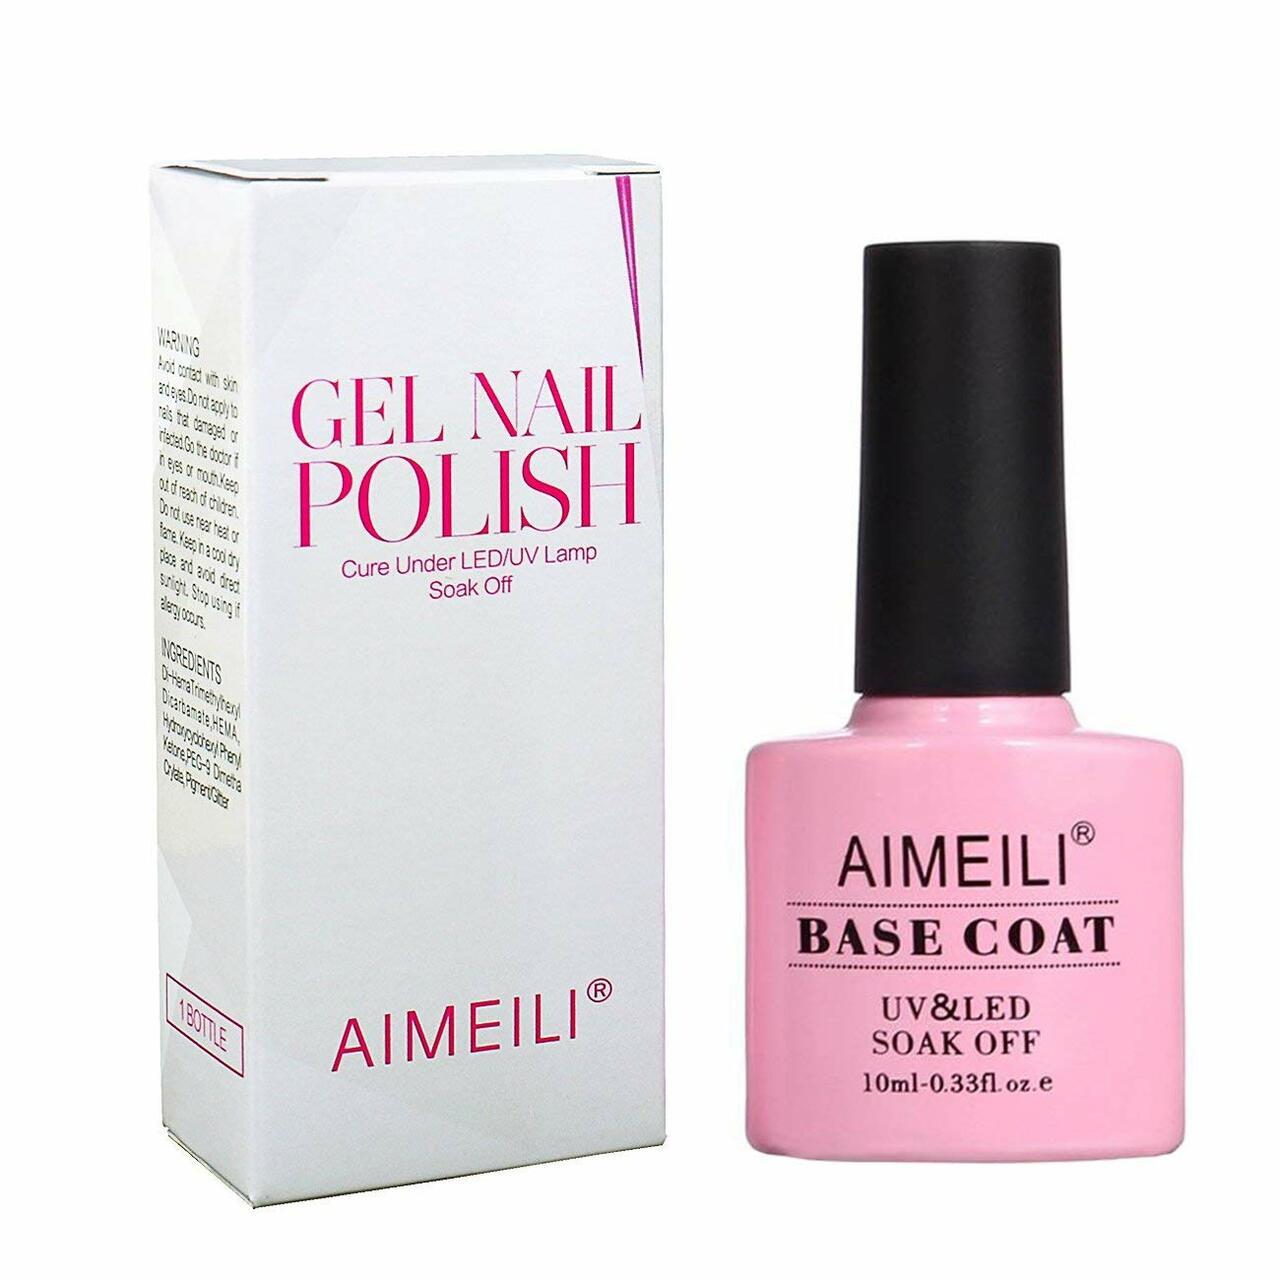 Aimeili Hema-Free Gel Polish Best at Home Fake Nail Kit with UV Light